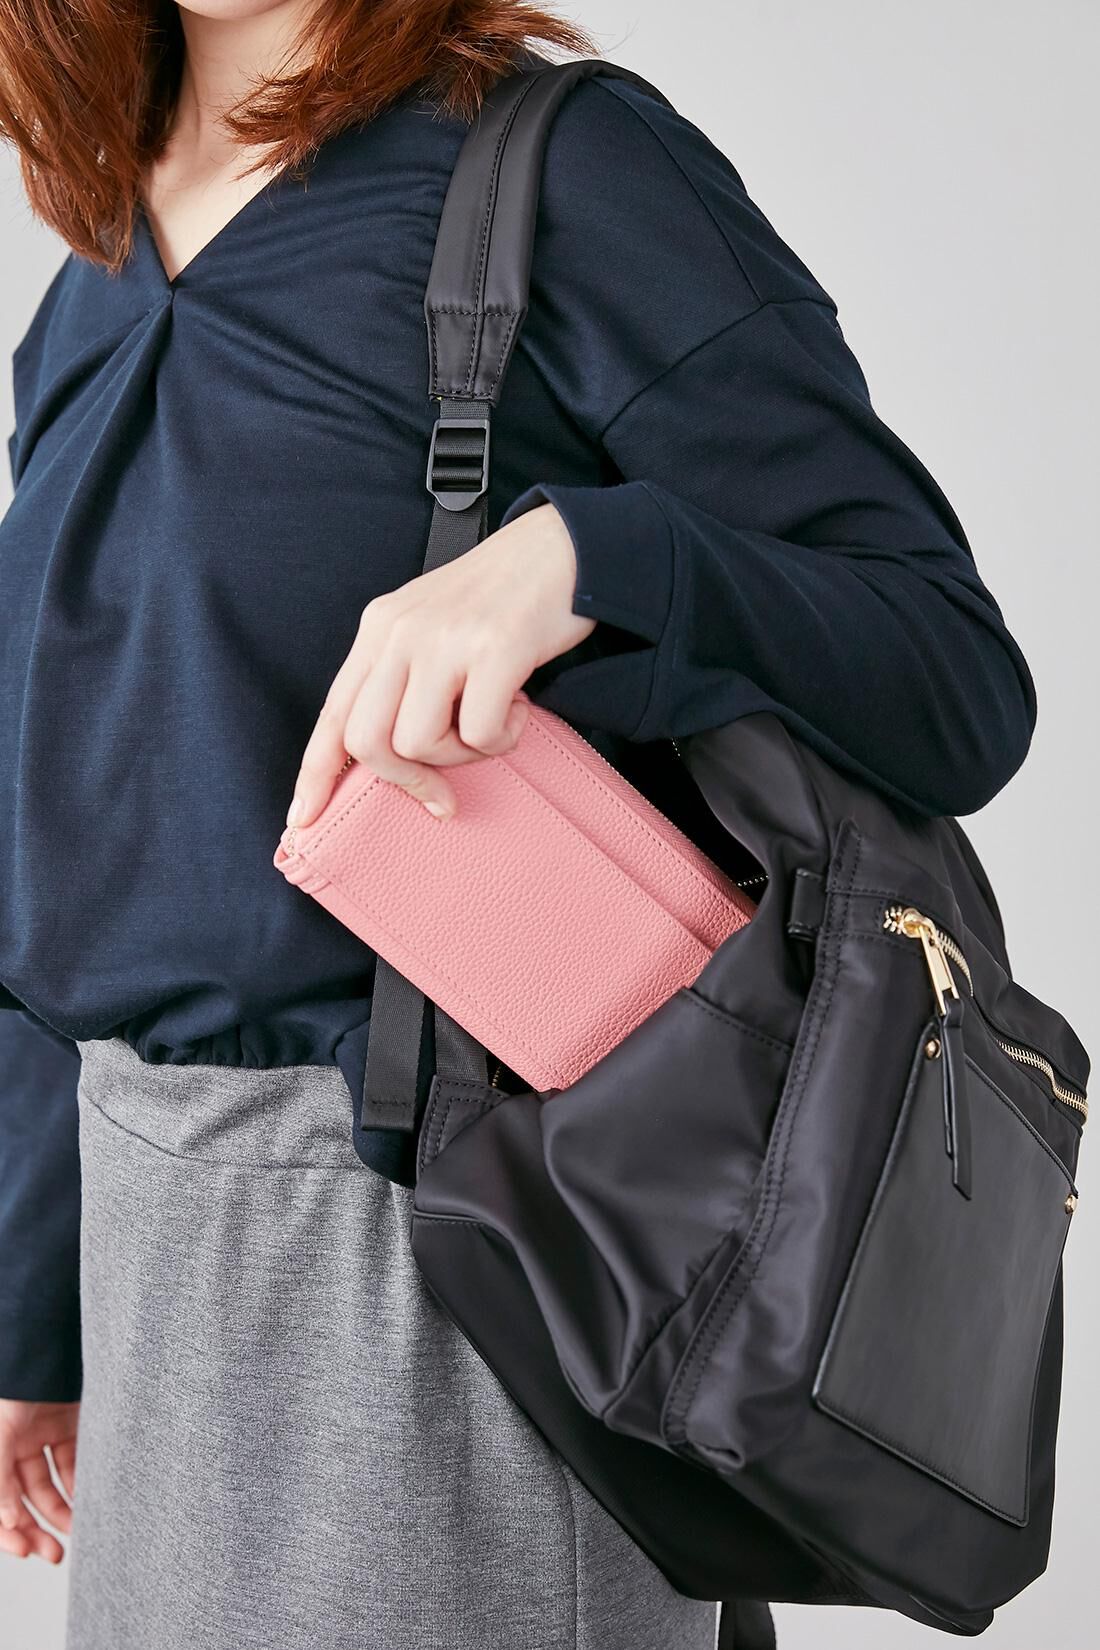 IEDIT|IEDIT[イディット]ワガママ企画　通勤にうれしい安心機能が盛りだくさん！ きれいめ大人リュック〈ブラック〉|背負ったまま、背中側のファスナーから財布などを取り出せます。